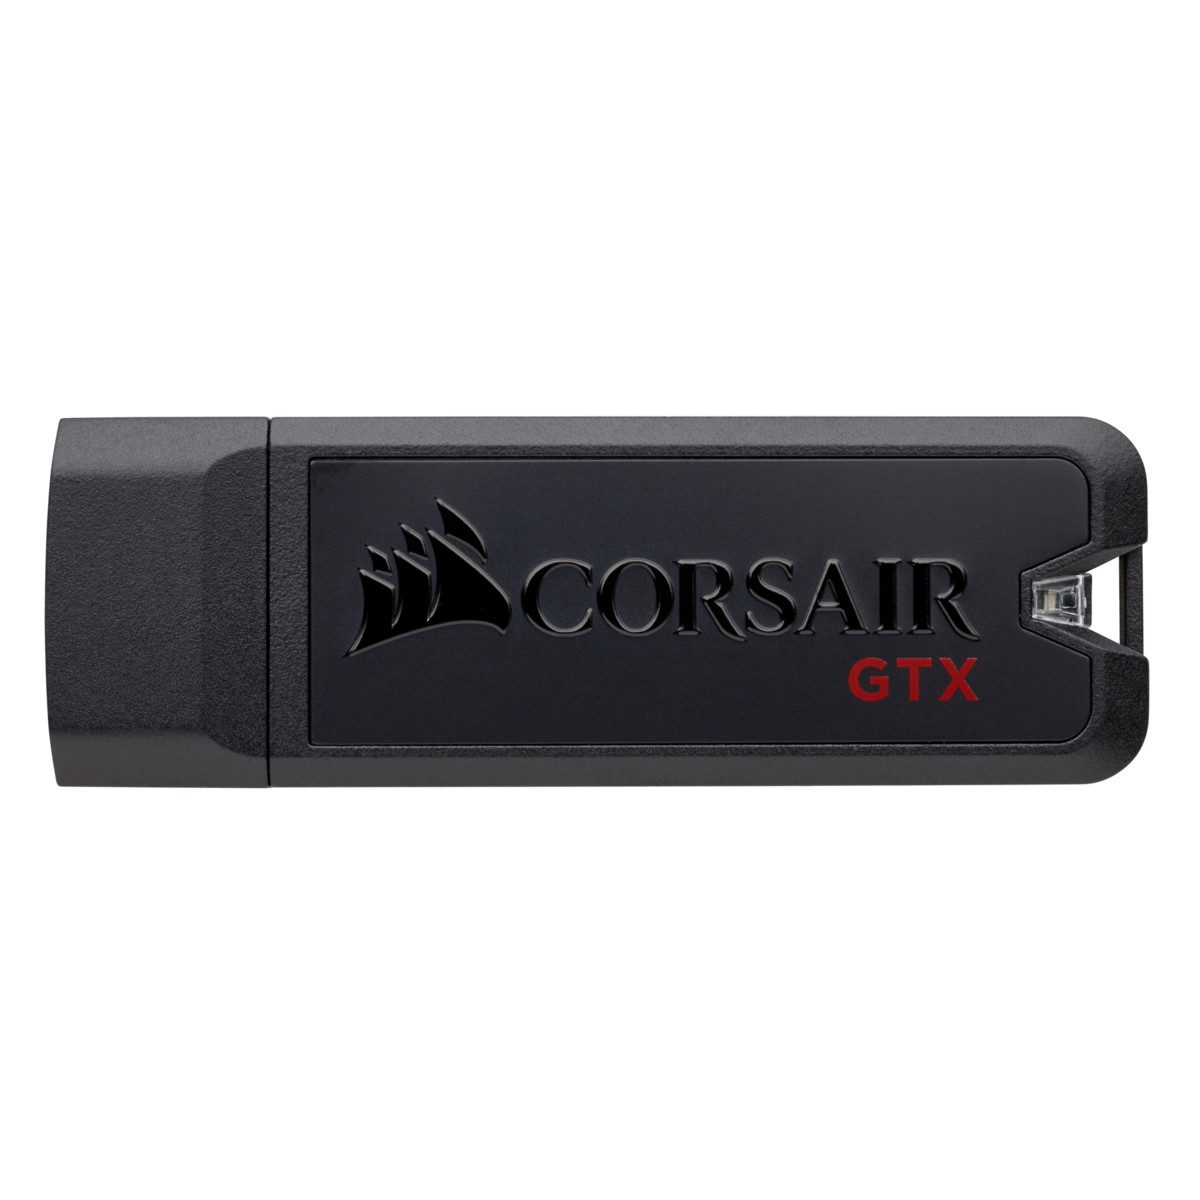 USB 3.1 Corsair Voyager GTX 512GB - Hàng chính hãng